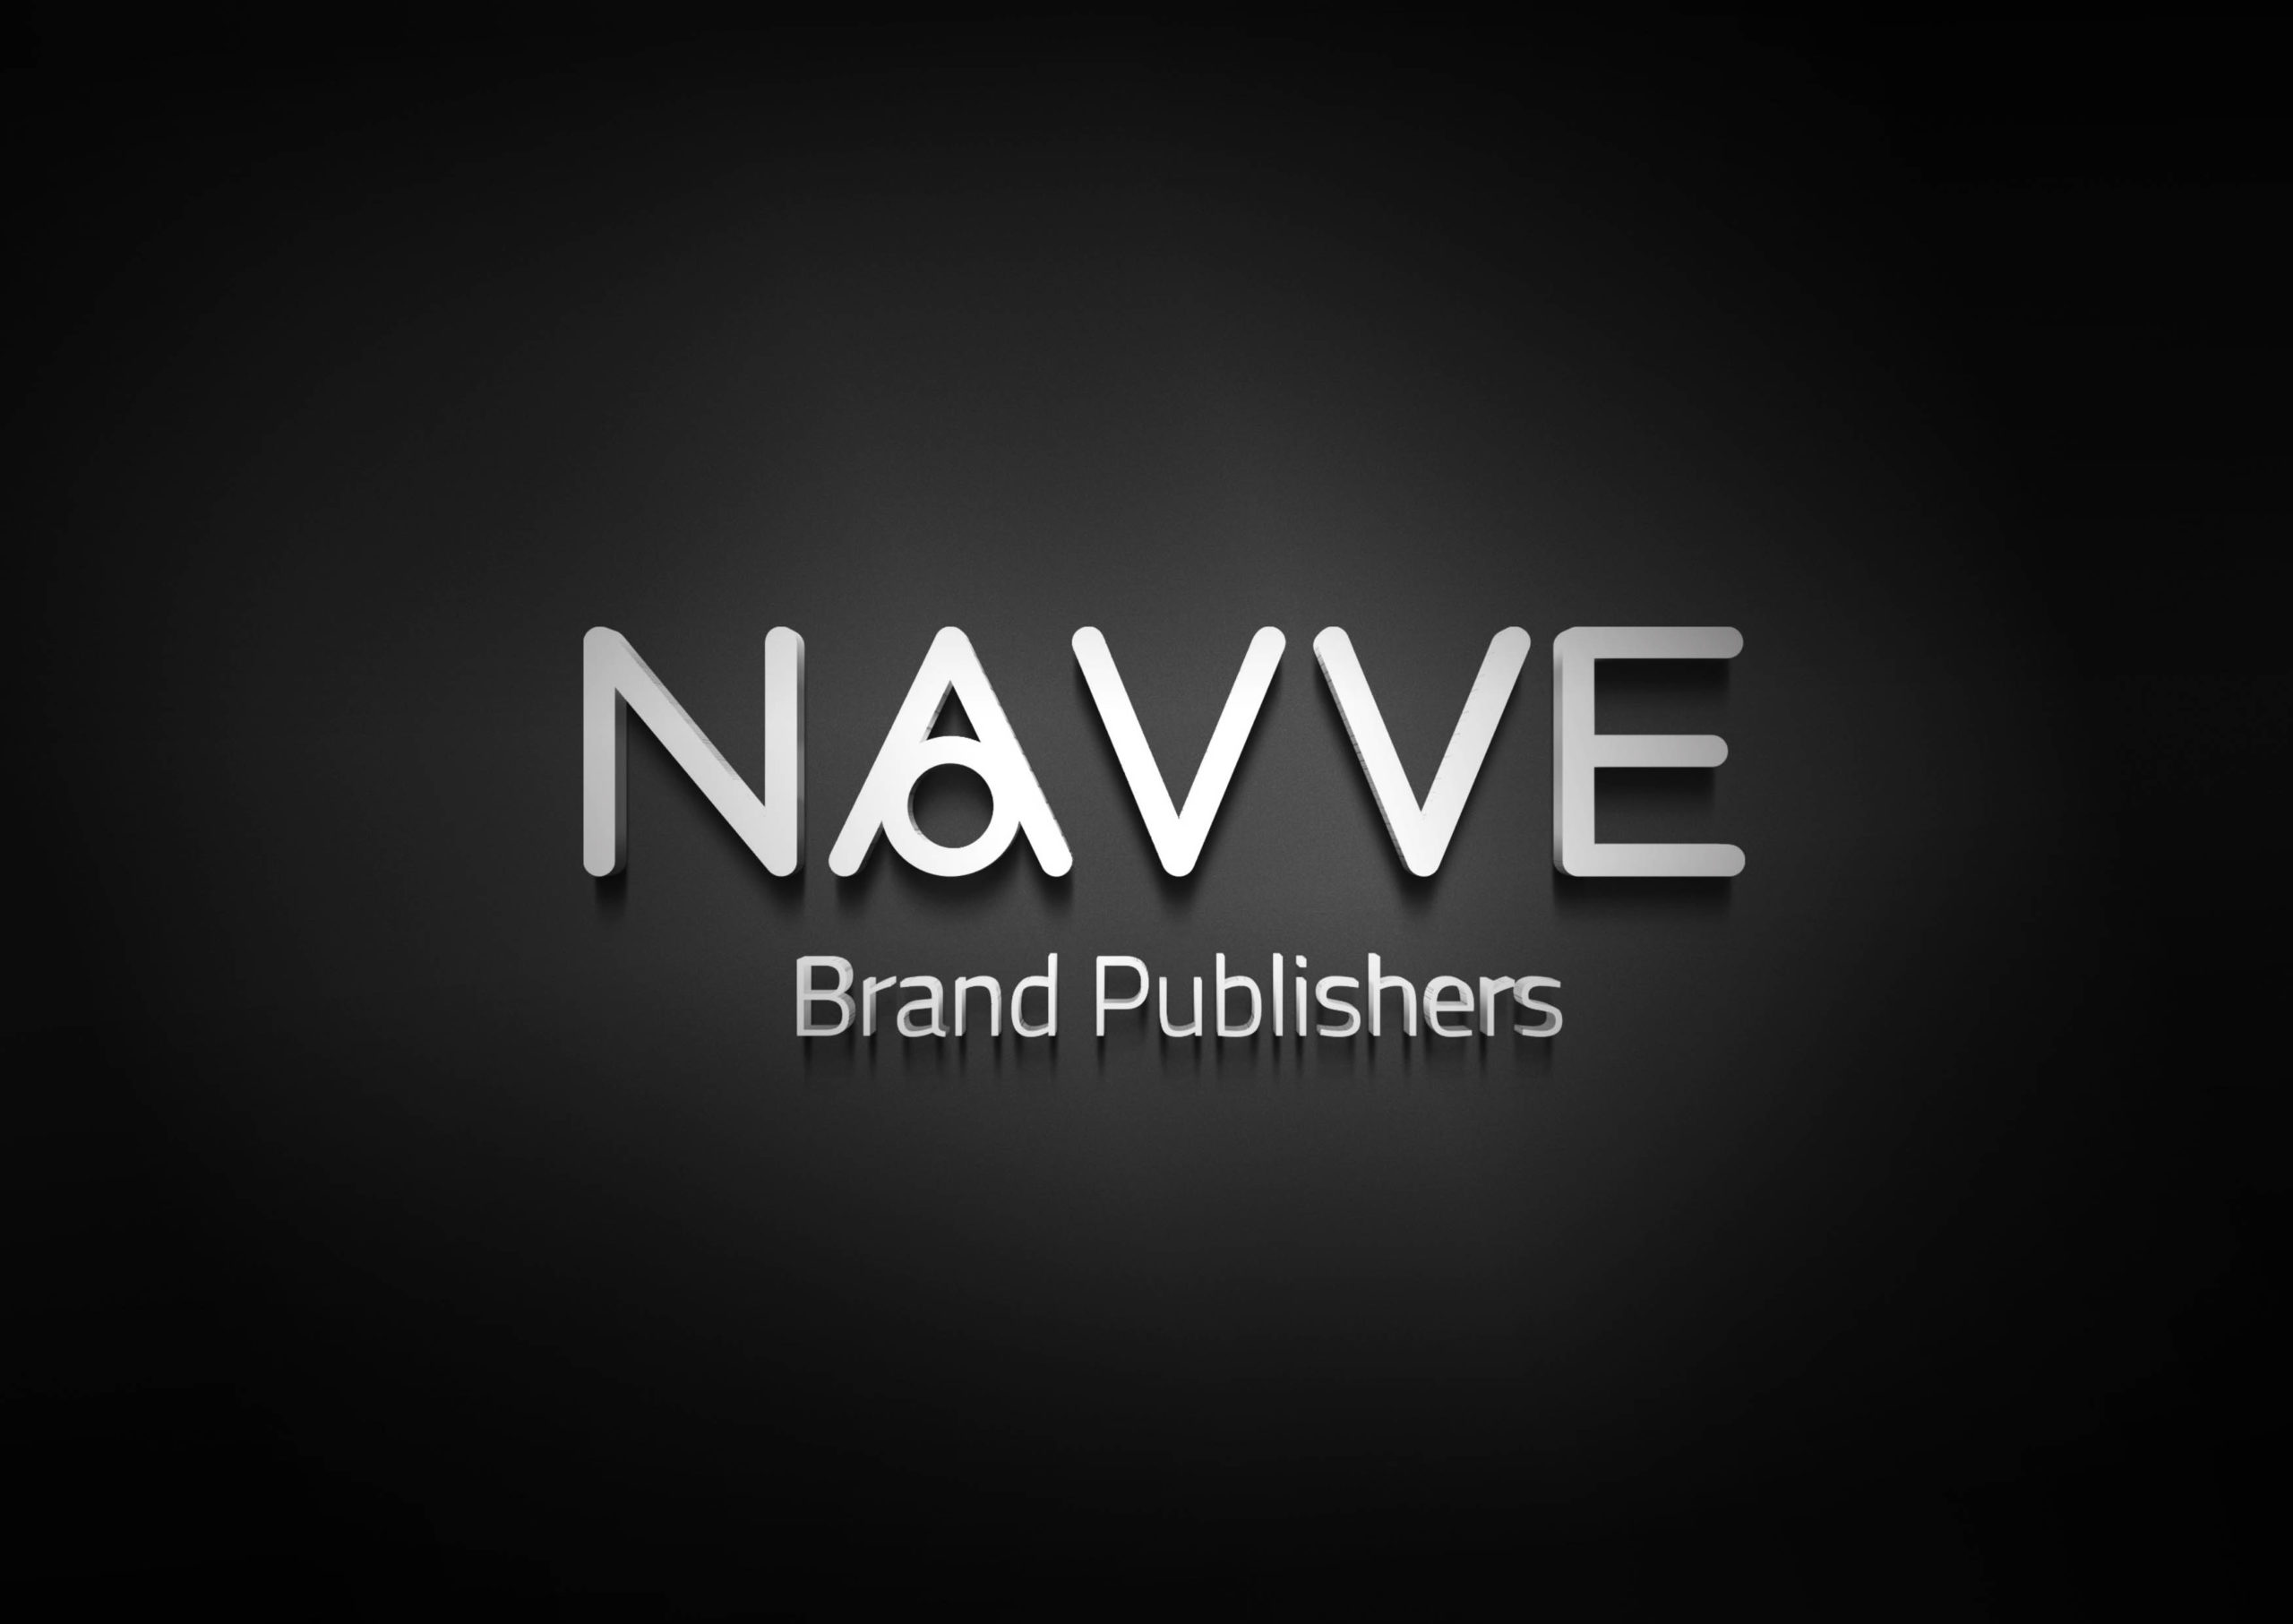 Navve Brand Publishers